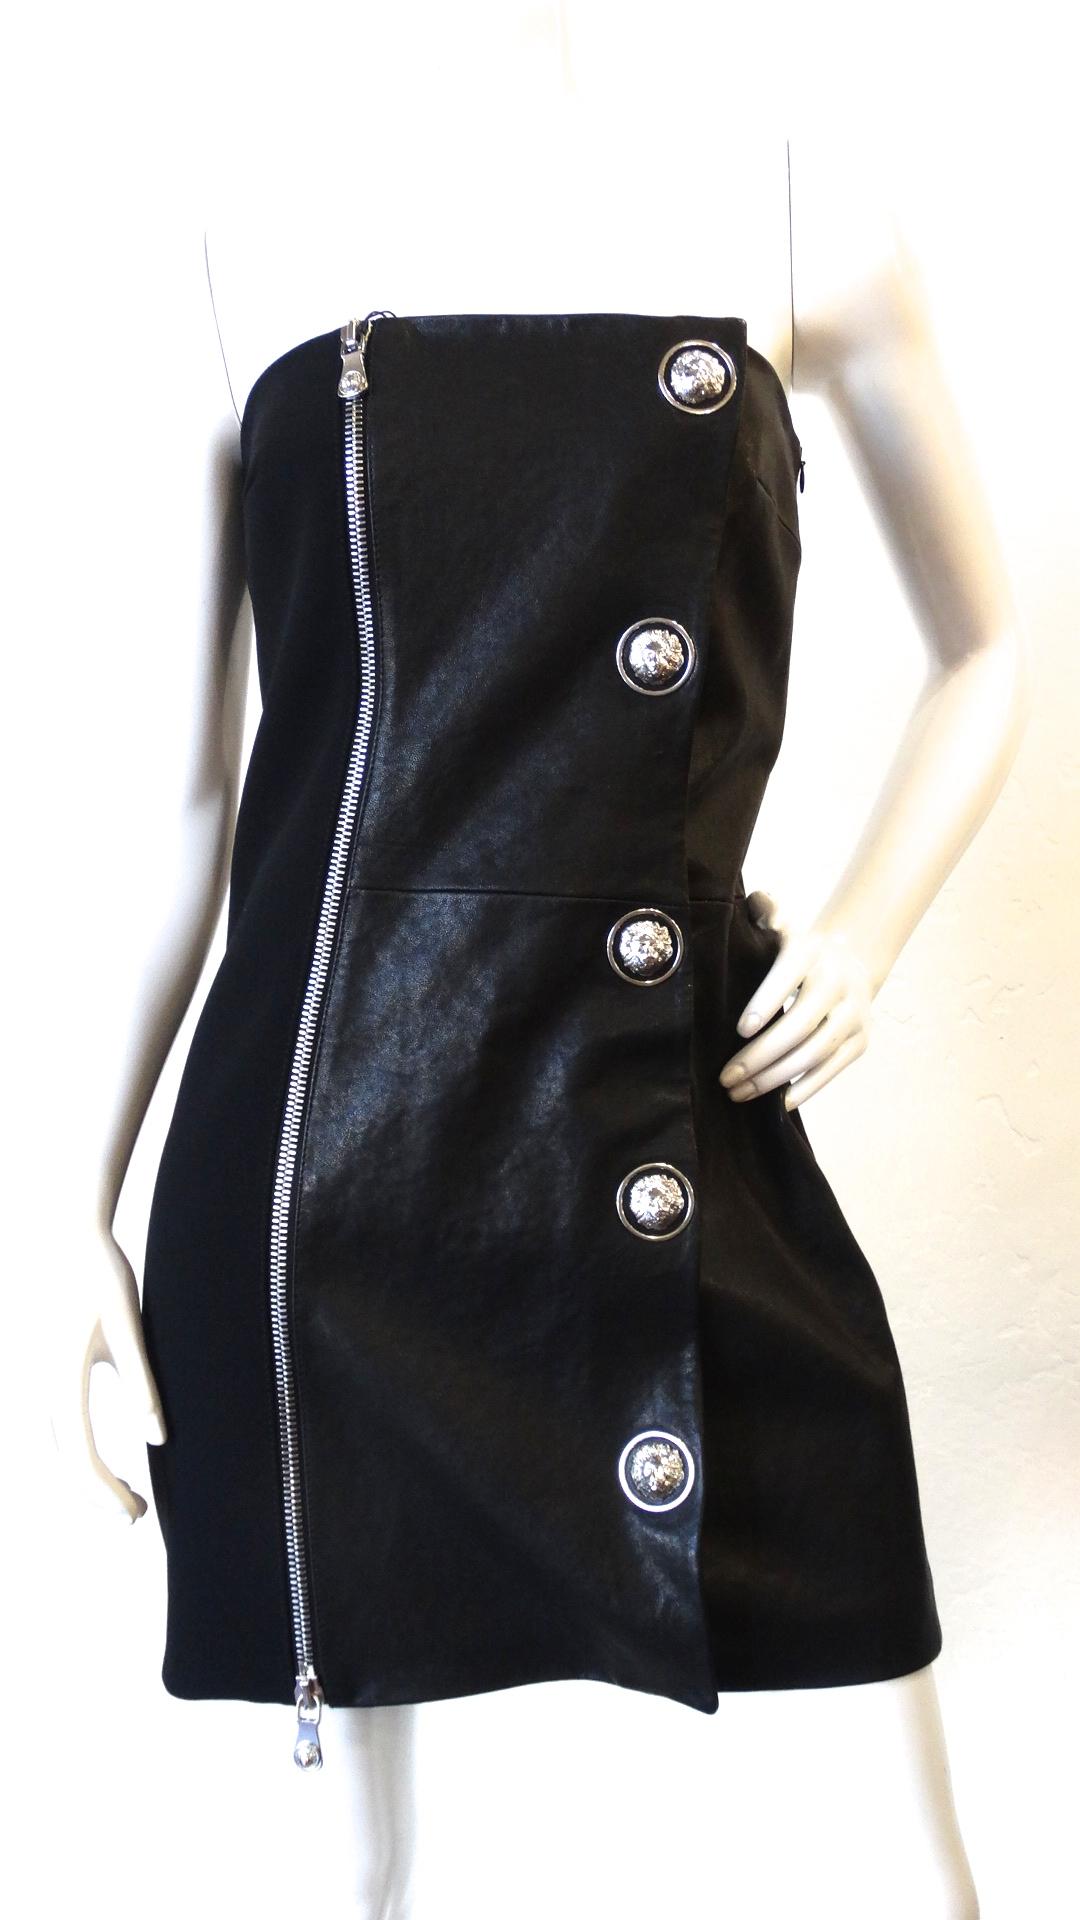 Das sexieste Cocktailkleid ist da! CIRCA Ende der 2000er Jahre wurde dieses Kleid von Anthony Vaccarello entworfen, der von 2014-2016 eine Capsule Collection für Versus Versace entwarf. Dieses trägerlose Minikleid besteht zur Hälfte aus Leder und